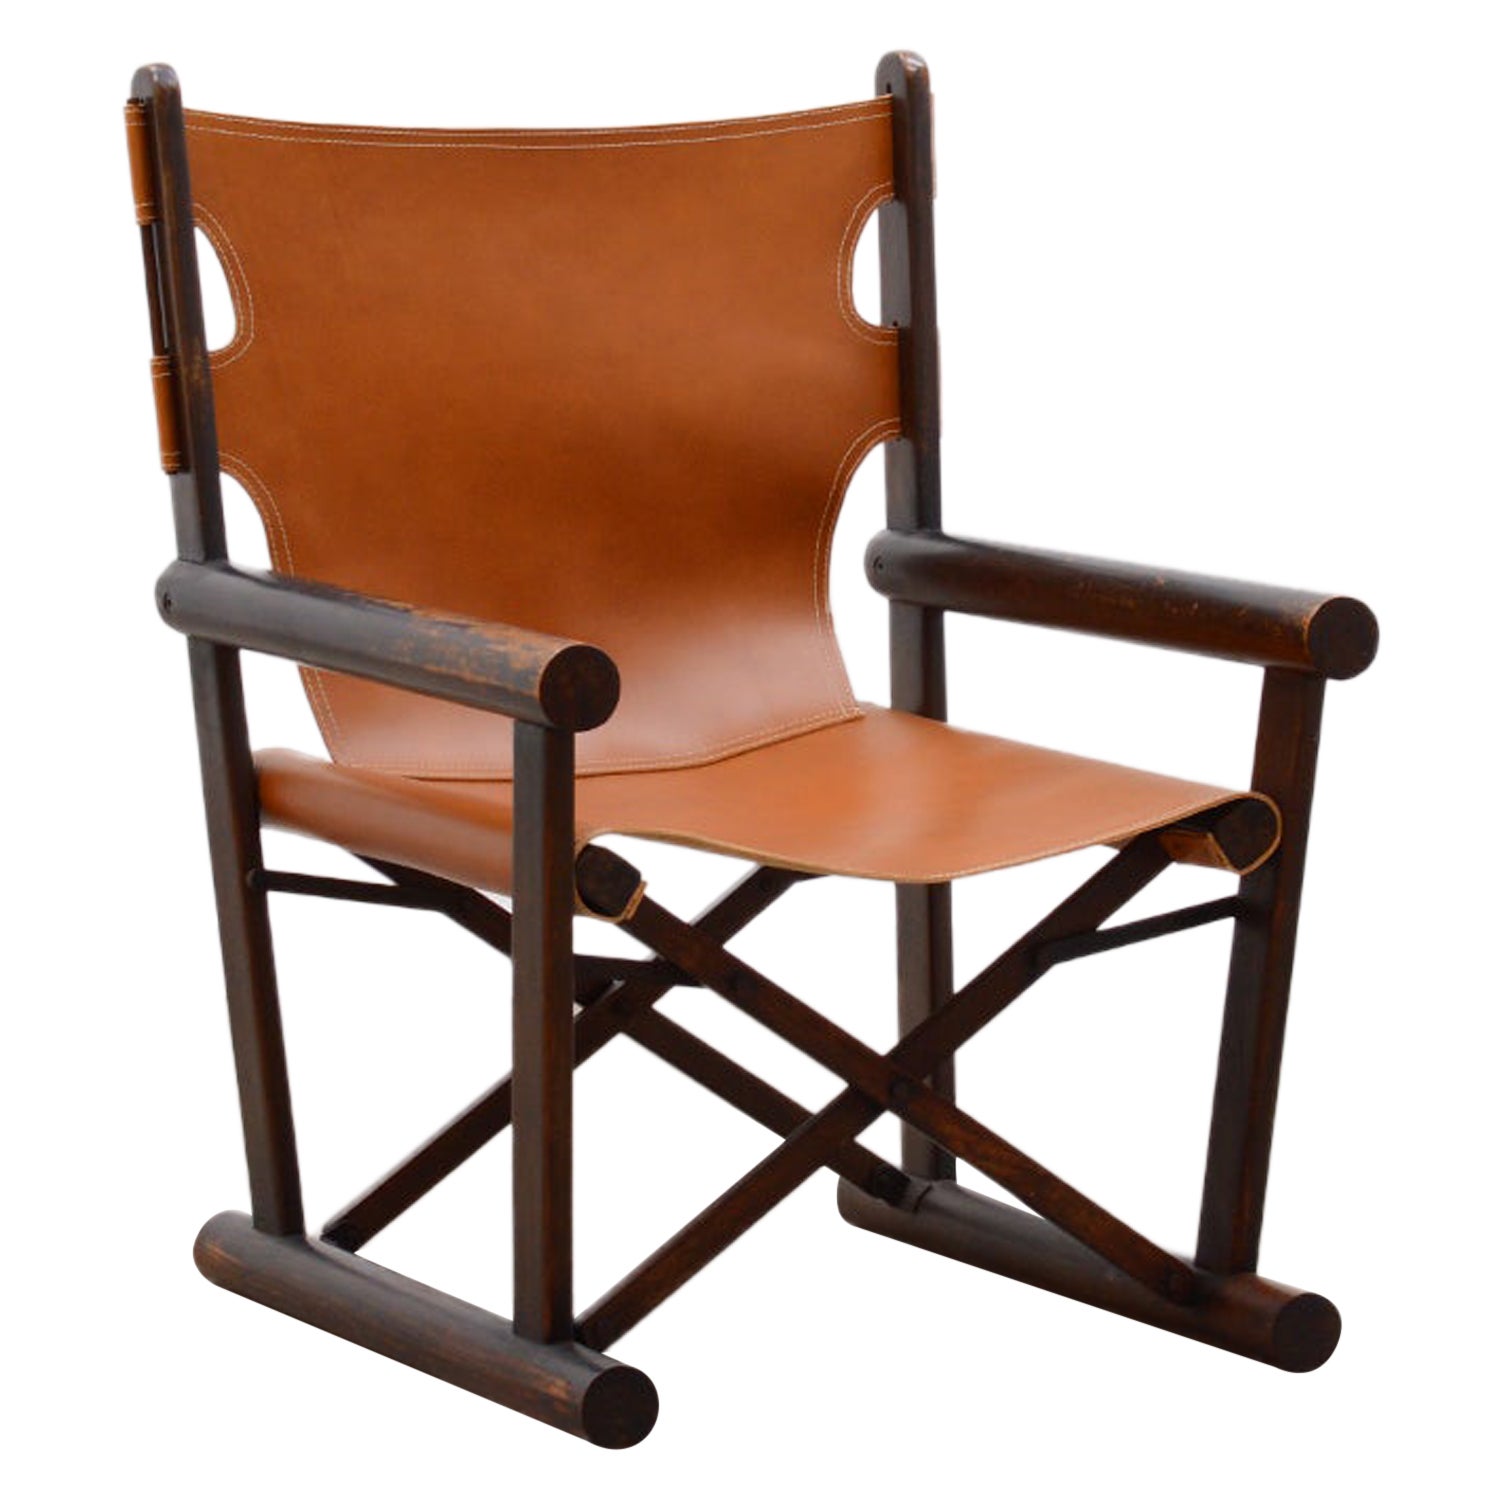 PL22 chair by Carlo Hauner & Martin Eisler for OCA, Brazil 60s.